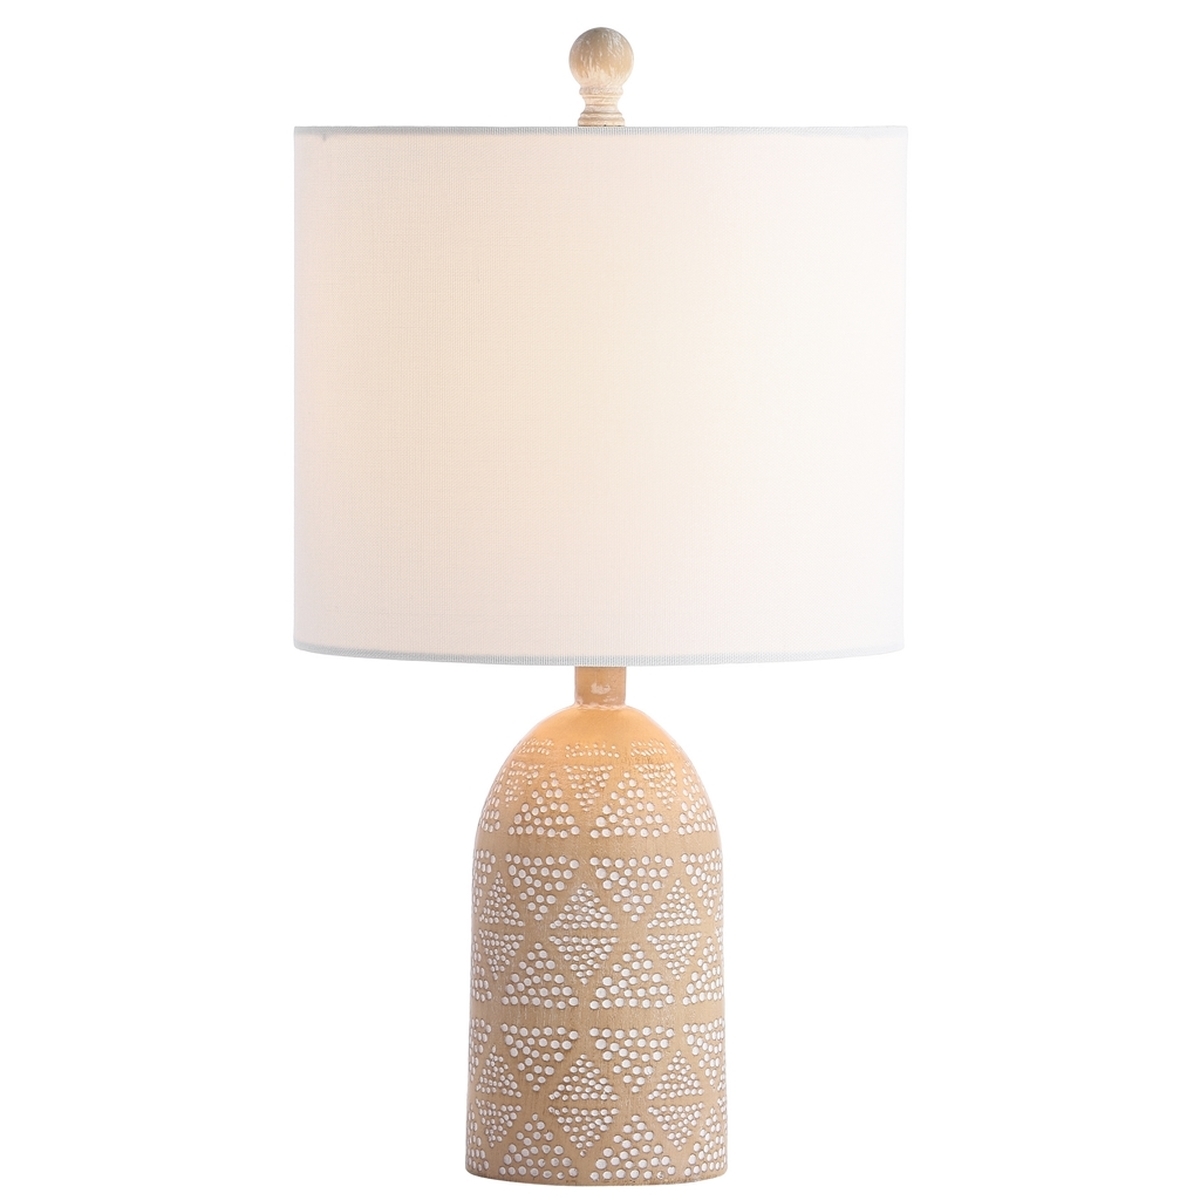 Nava Table Lamp - Sand - Arlo Home - Image 2